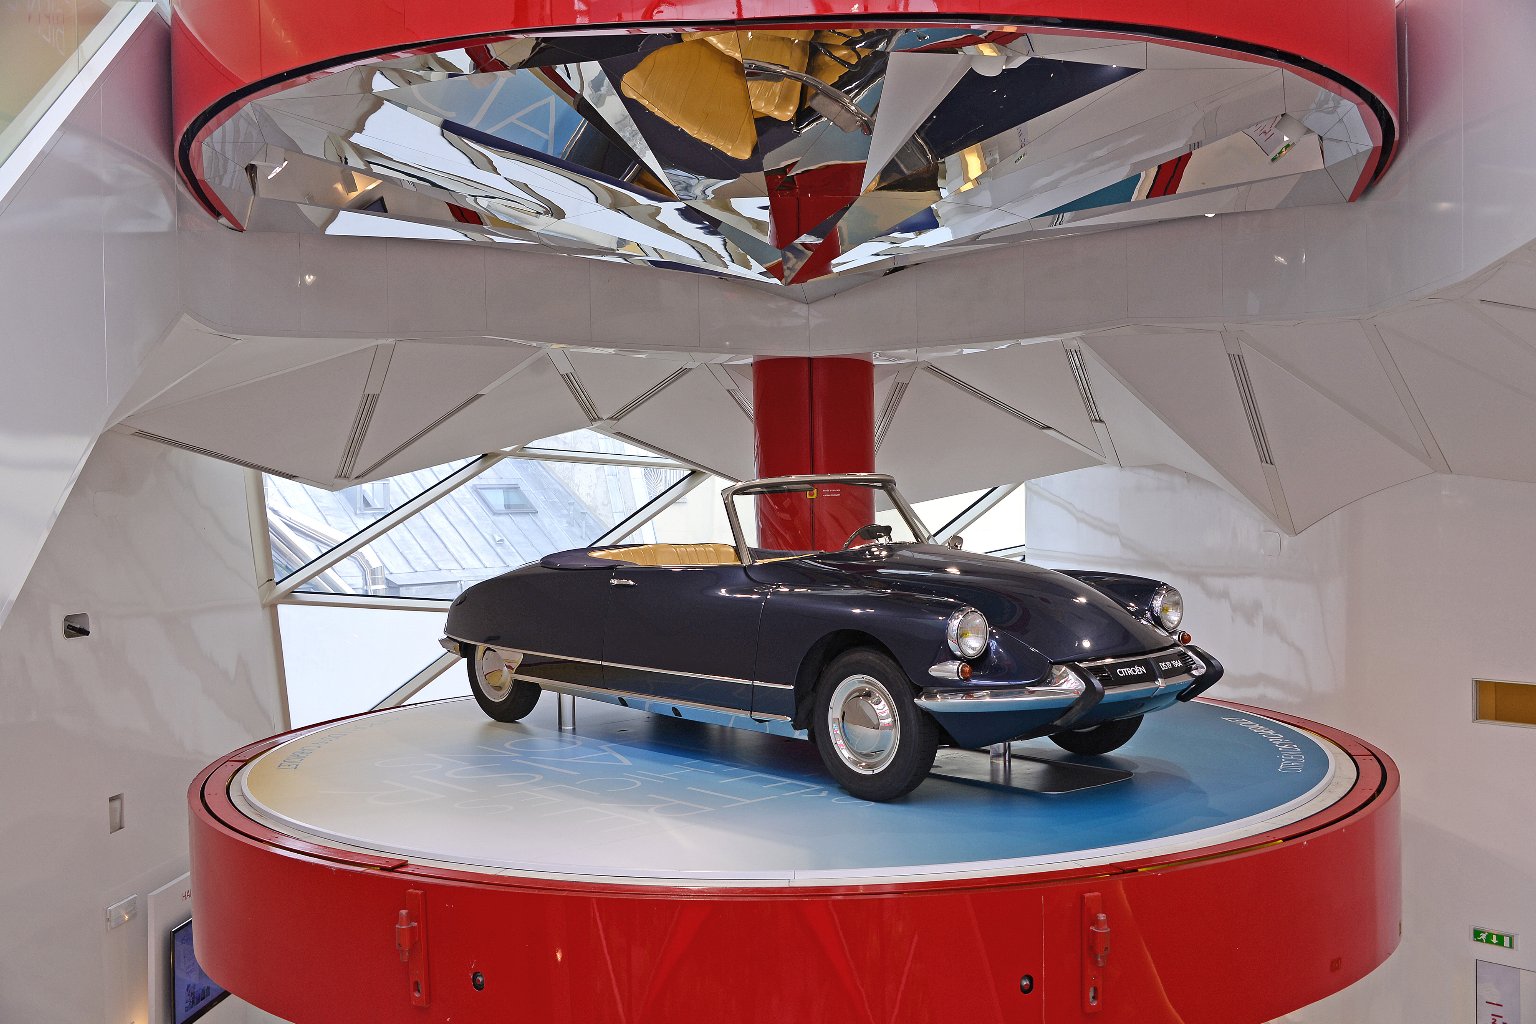 C42: Citroën Showroom